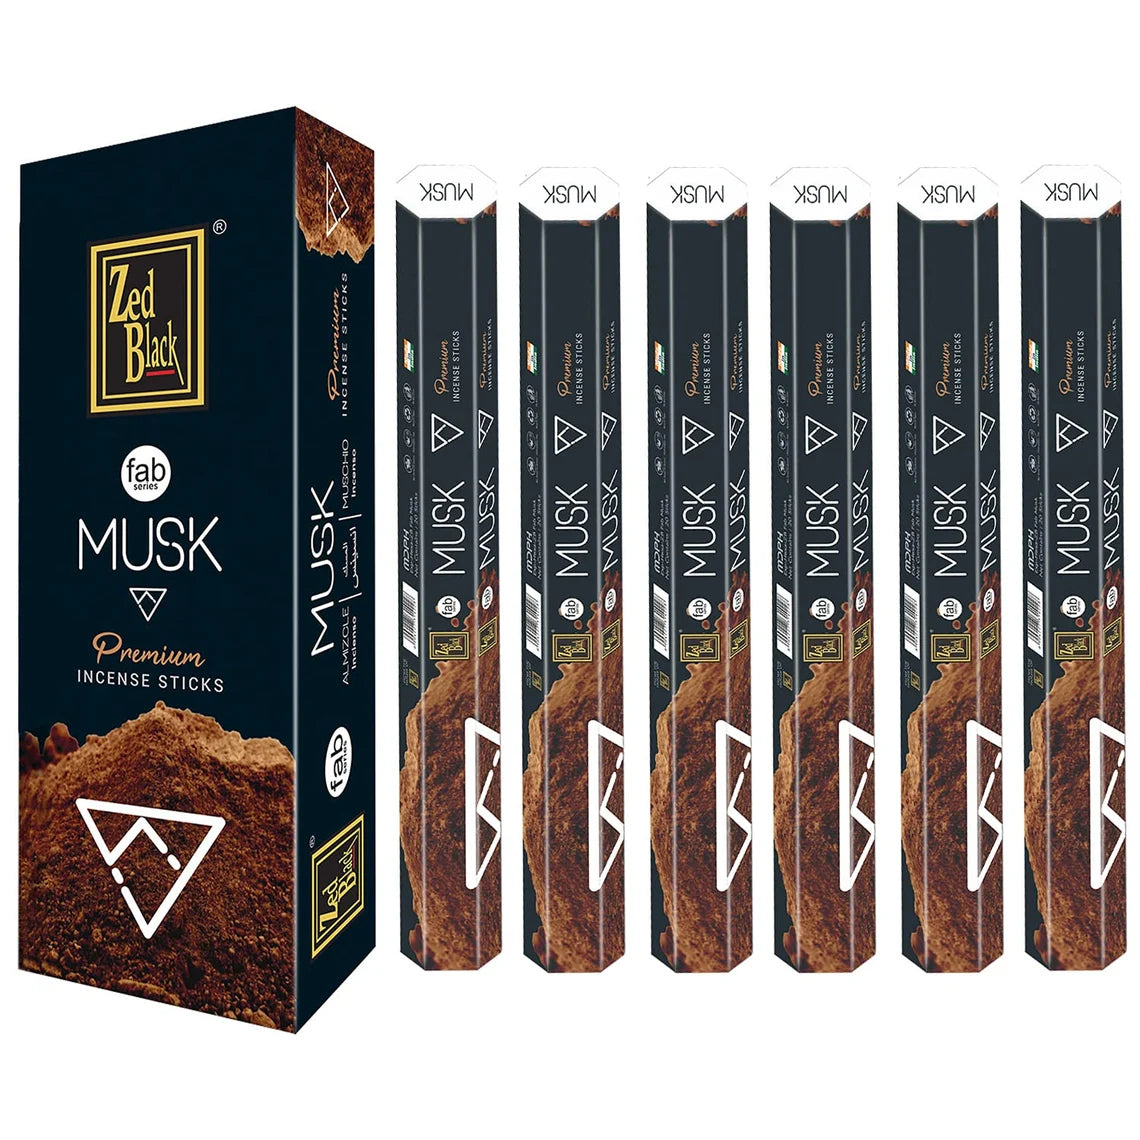 Zed Black Musk Incense Sticks, 20 Sticks, Pack of 6 Tubes